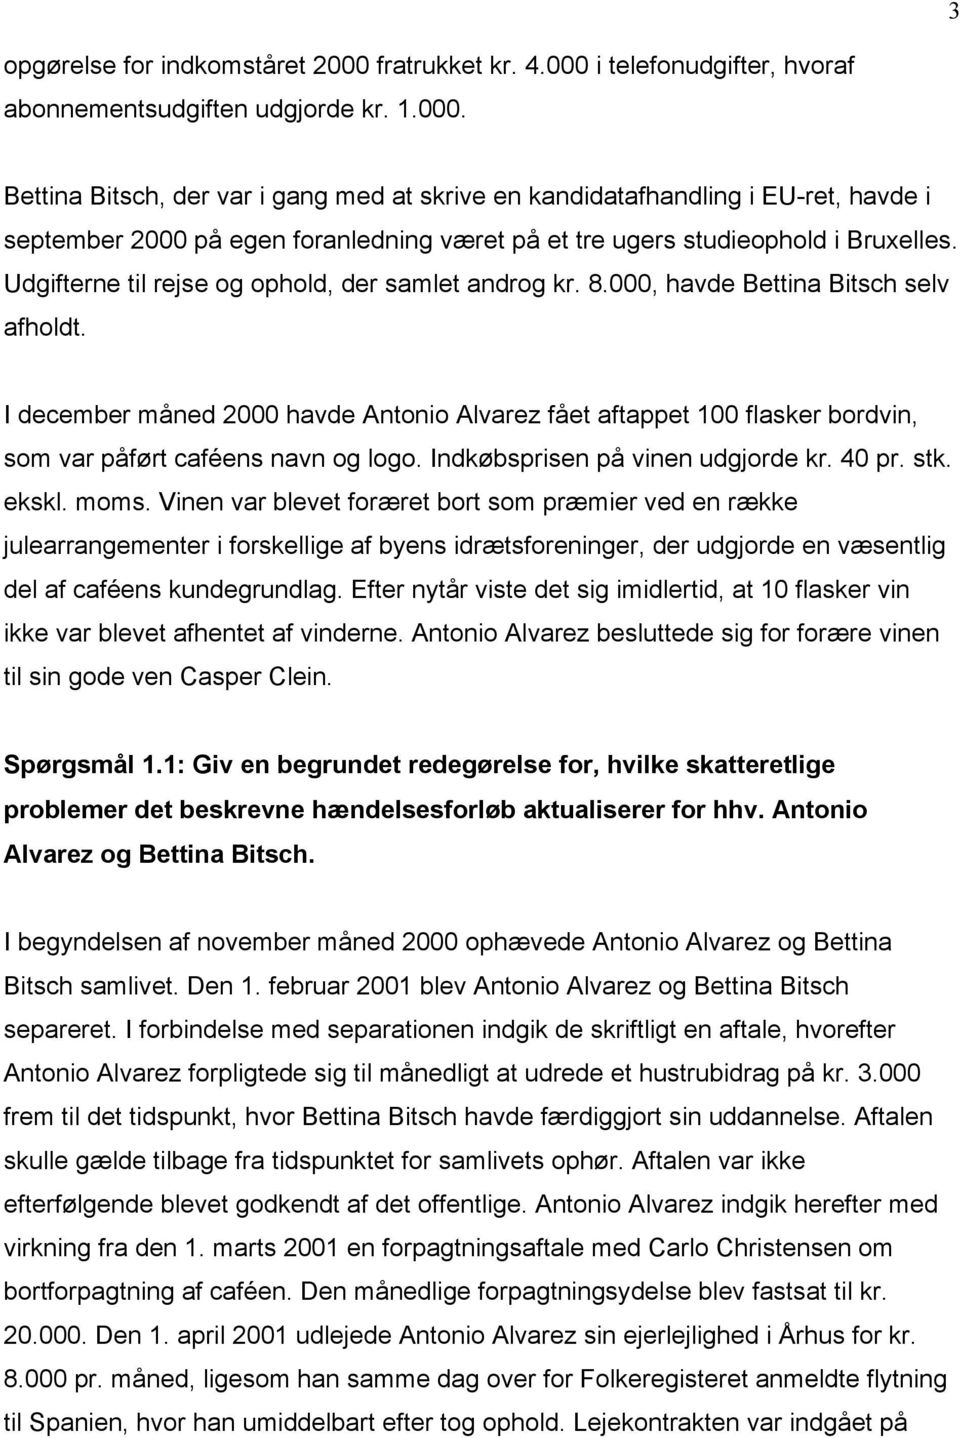 Udgifterne til rejse og ophold, der samlet androg kr. 8.000, havde Bettina Bitsch selv afholdt.